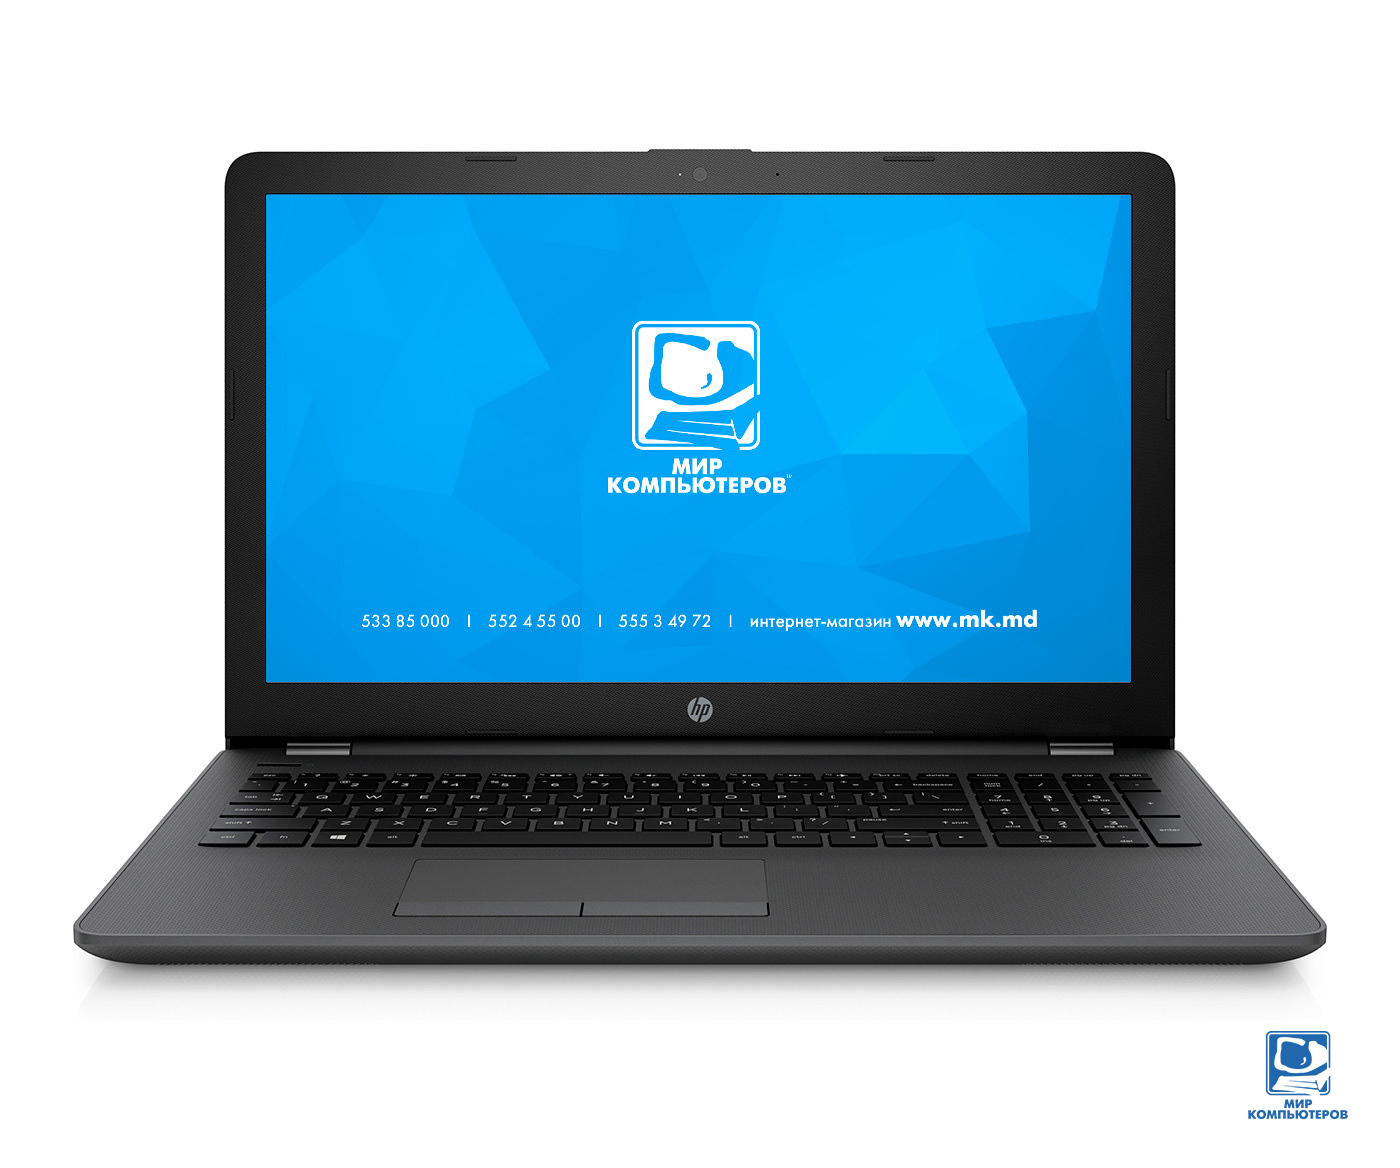 Ноутбук 15.6" HP 250 G6 (i5-7200U/4Gb/500Gb/R 520M 2Gb/DVD) (1XN34EA) Grey